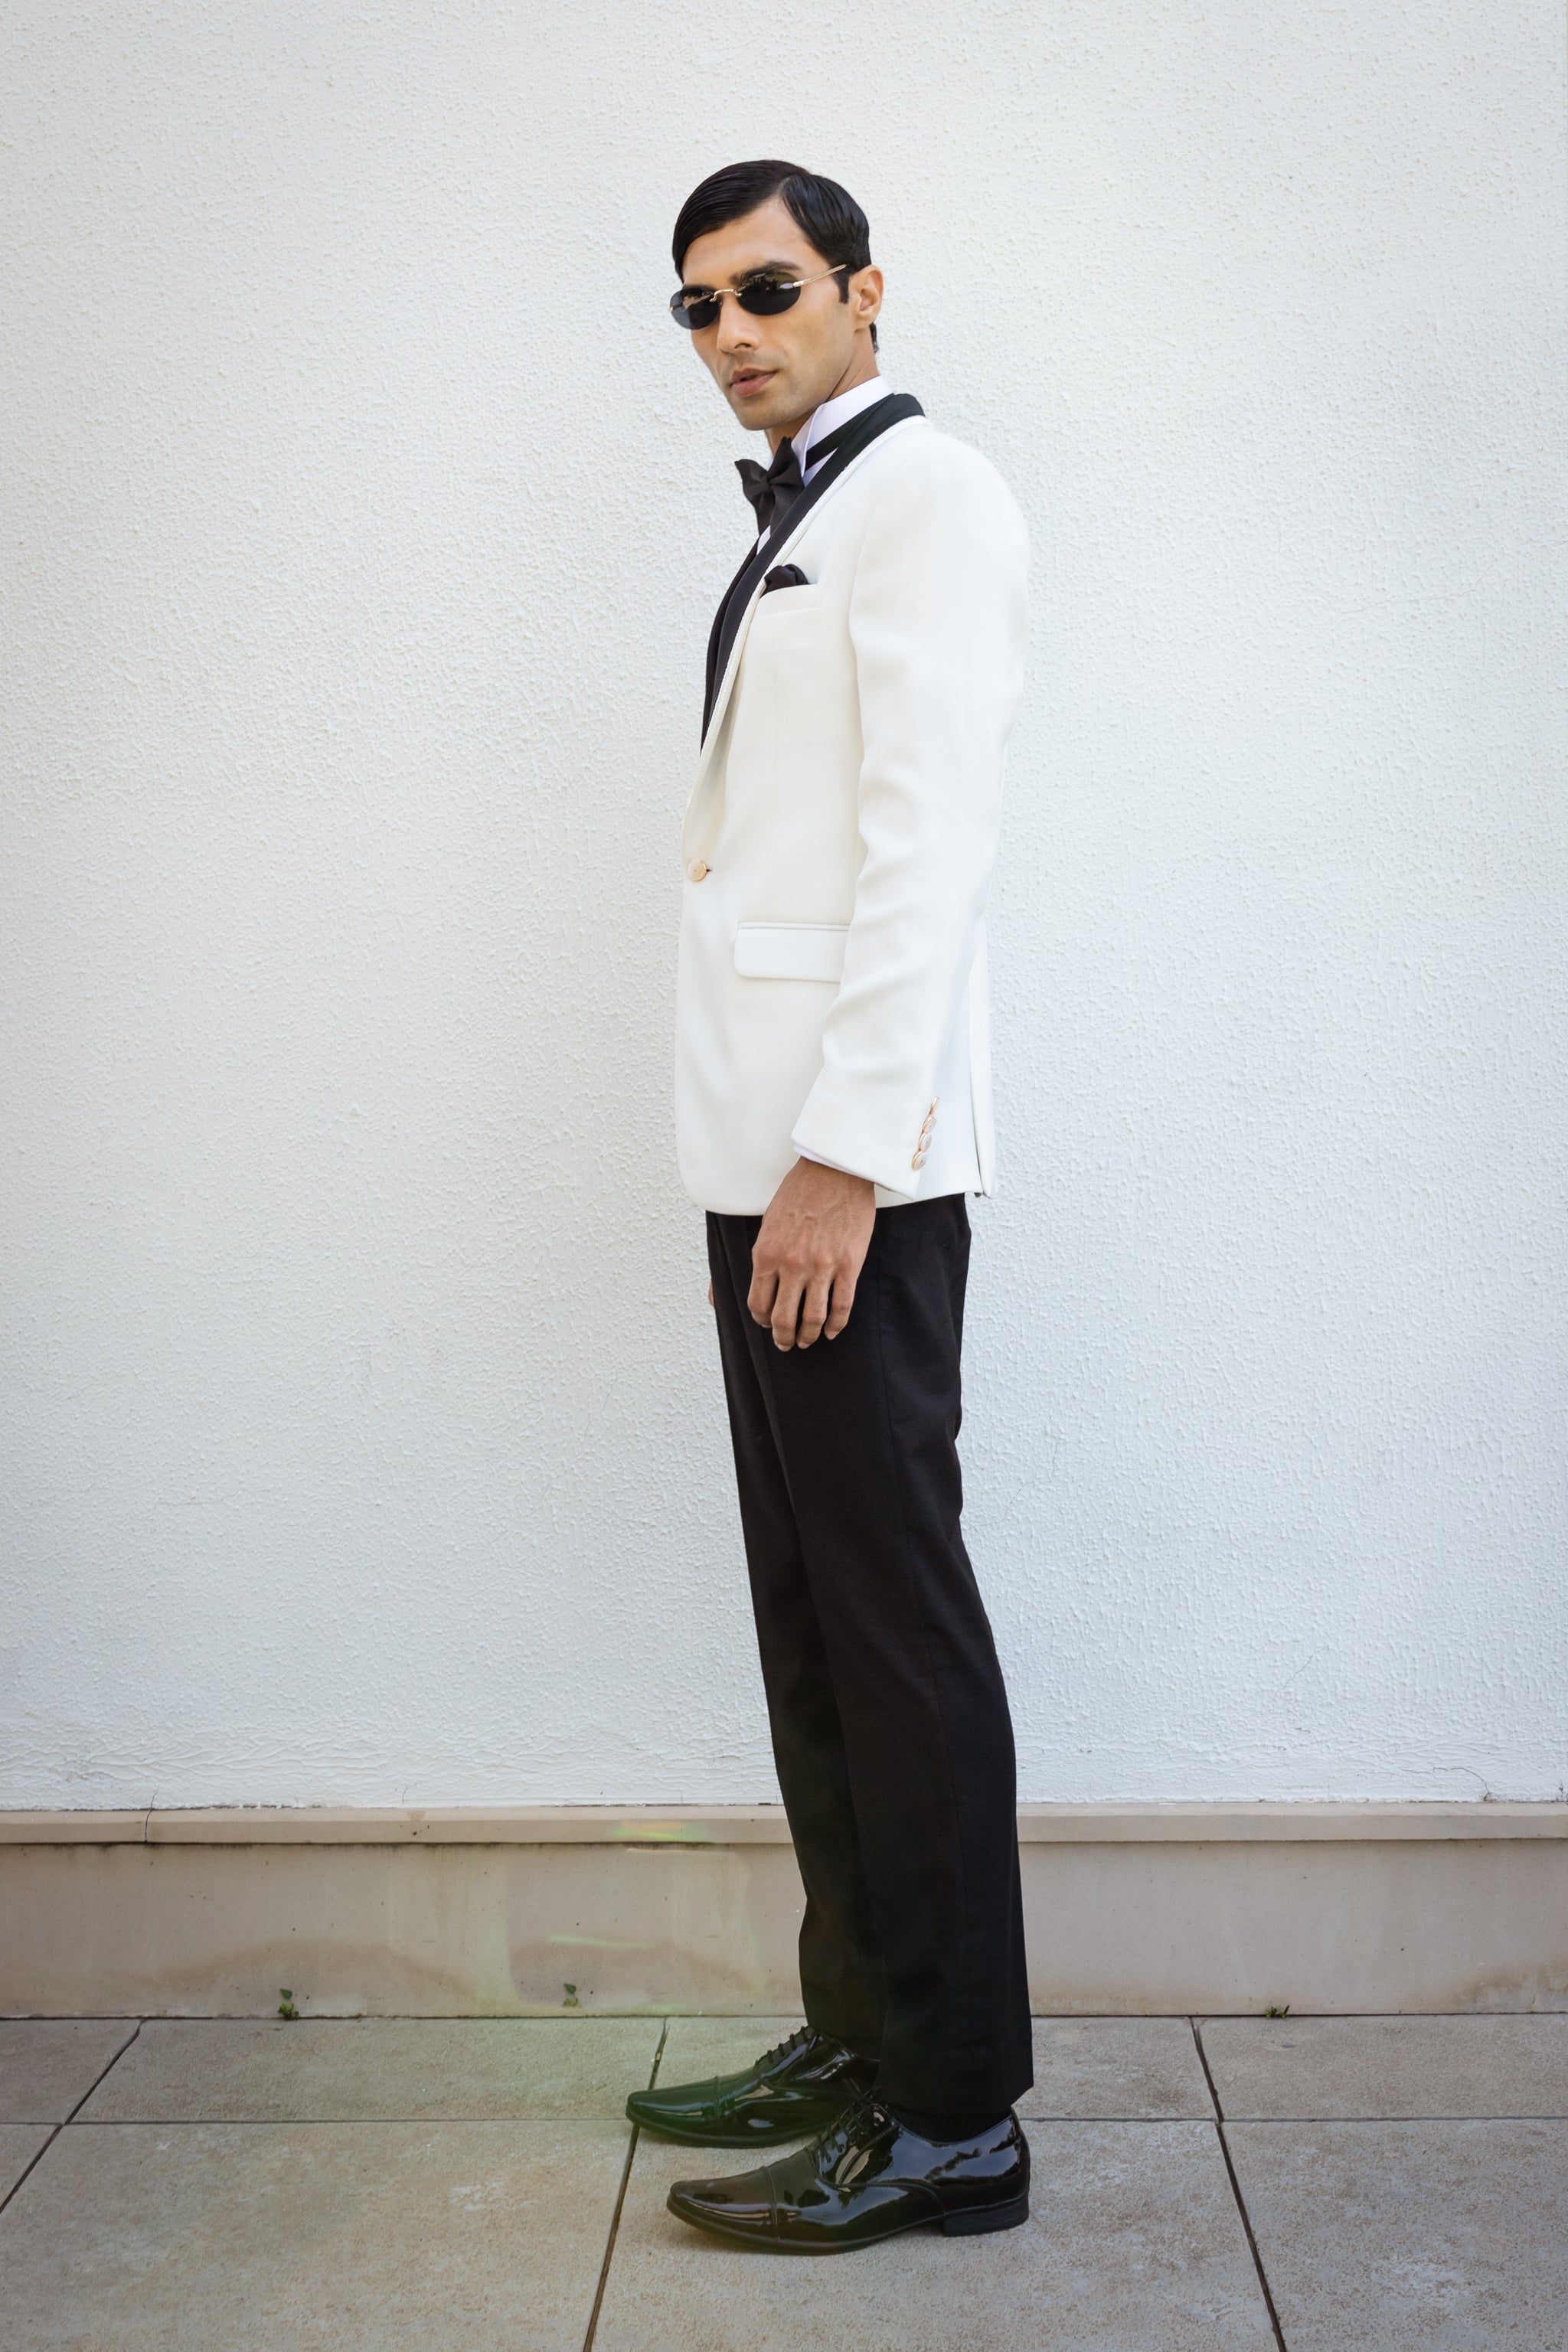 Opaline Ovation White Tuxedo Jacket.